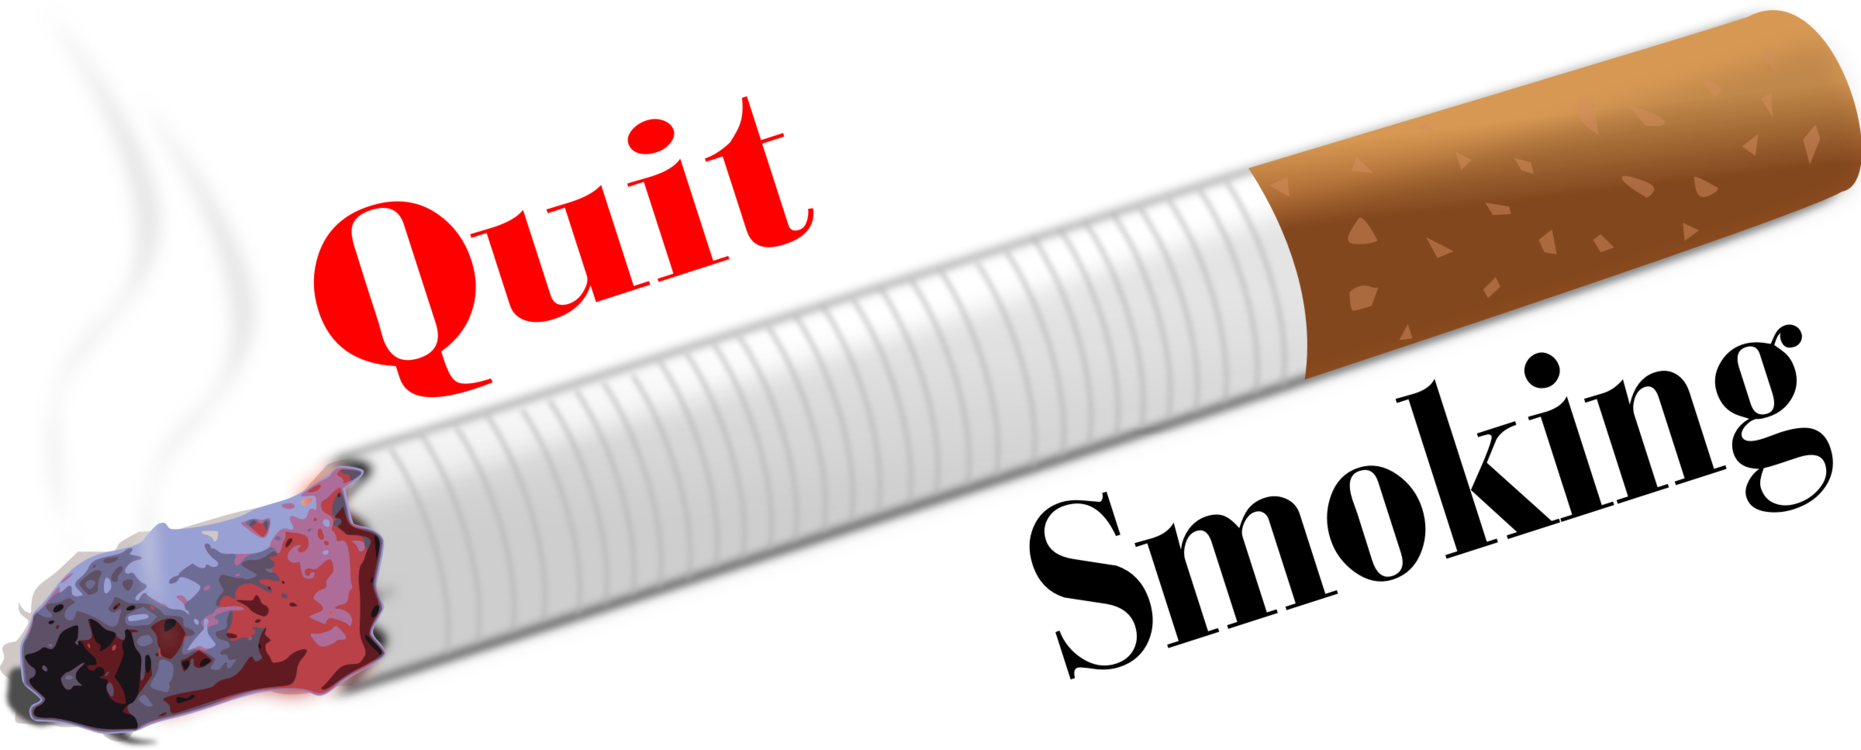 cigarette clipart tobacco product